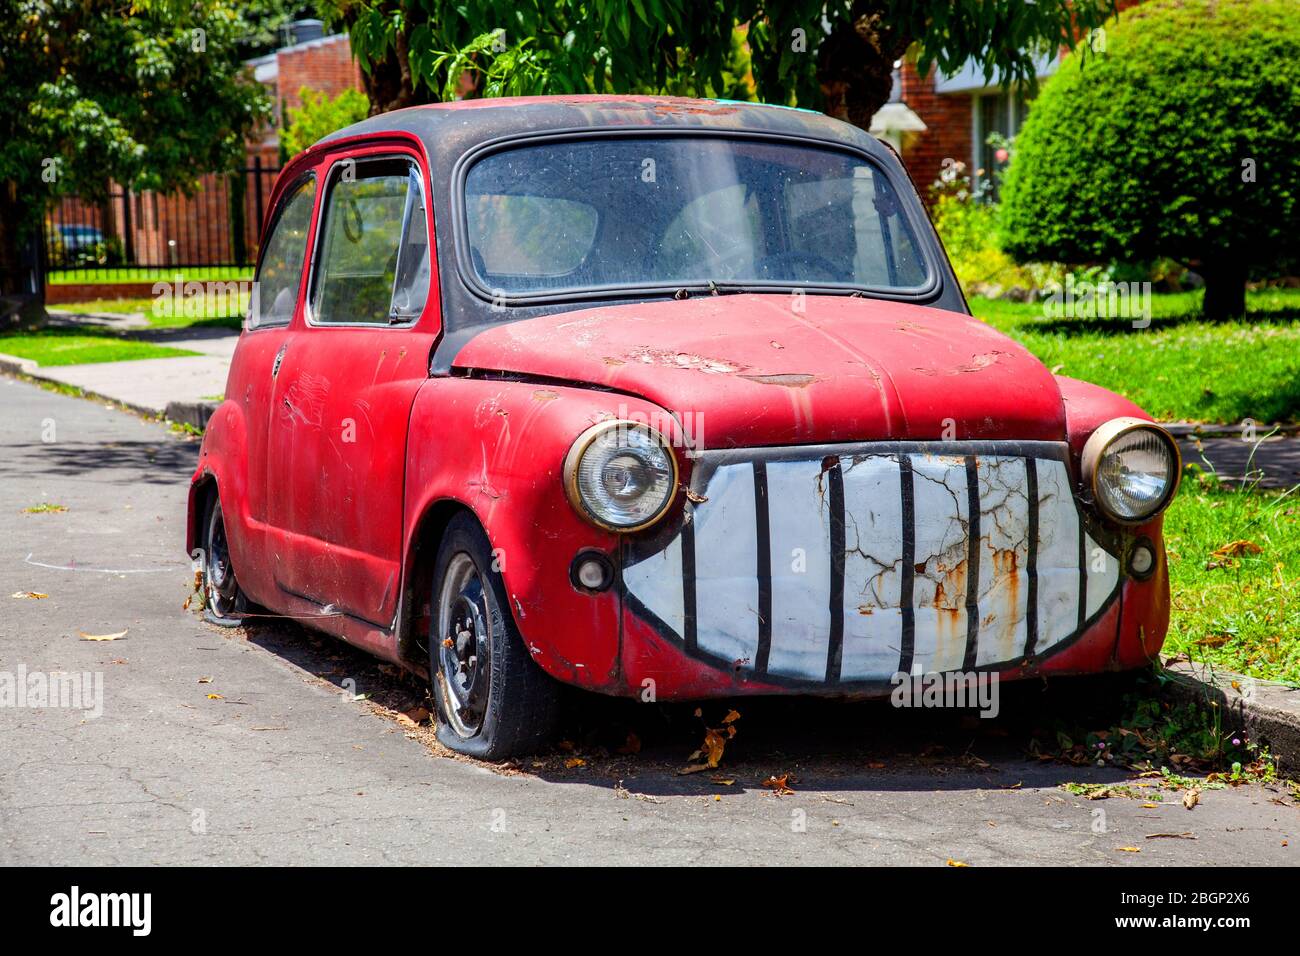 Alte lustige, hässliche benutzerdefinierte rote verlassen Fiat 500 ? In einer Straße, Bogota, Kolumbien, Südamerika. Stockfoto